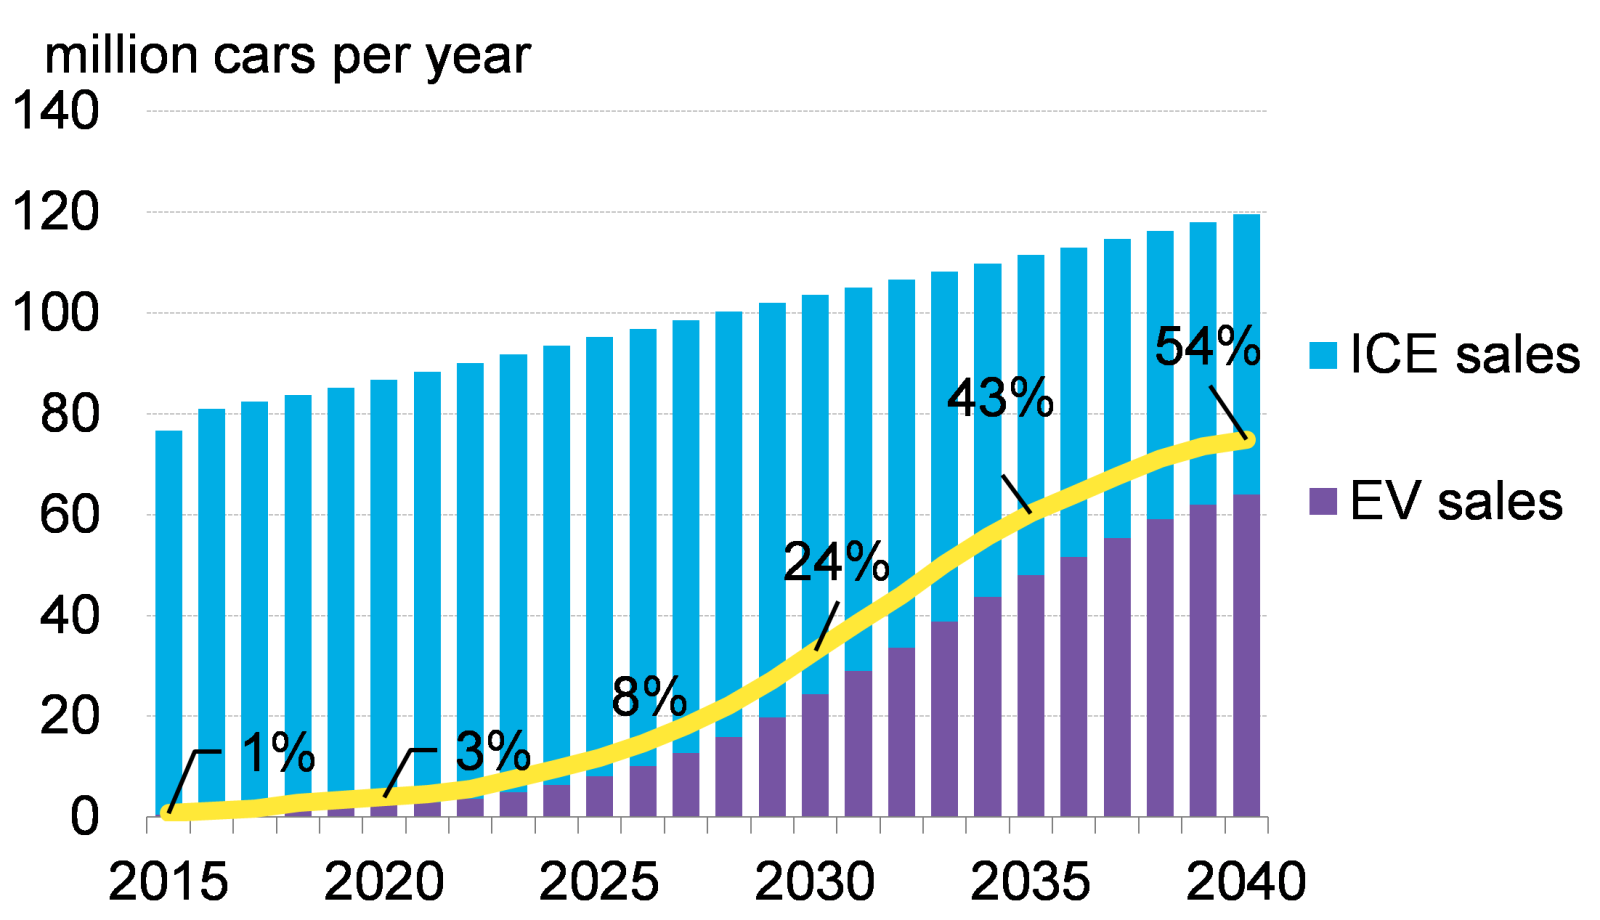 到2040年电动汽车占新车销量比例将达到54%